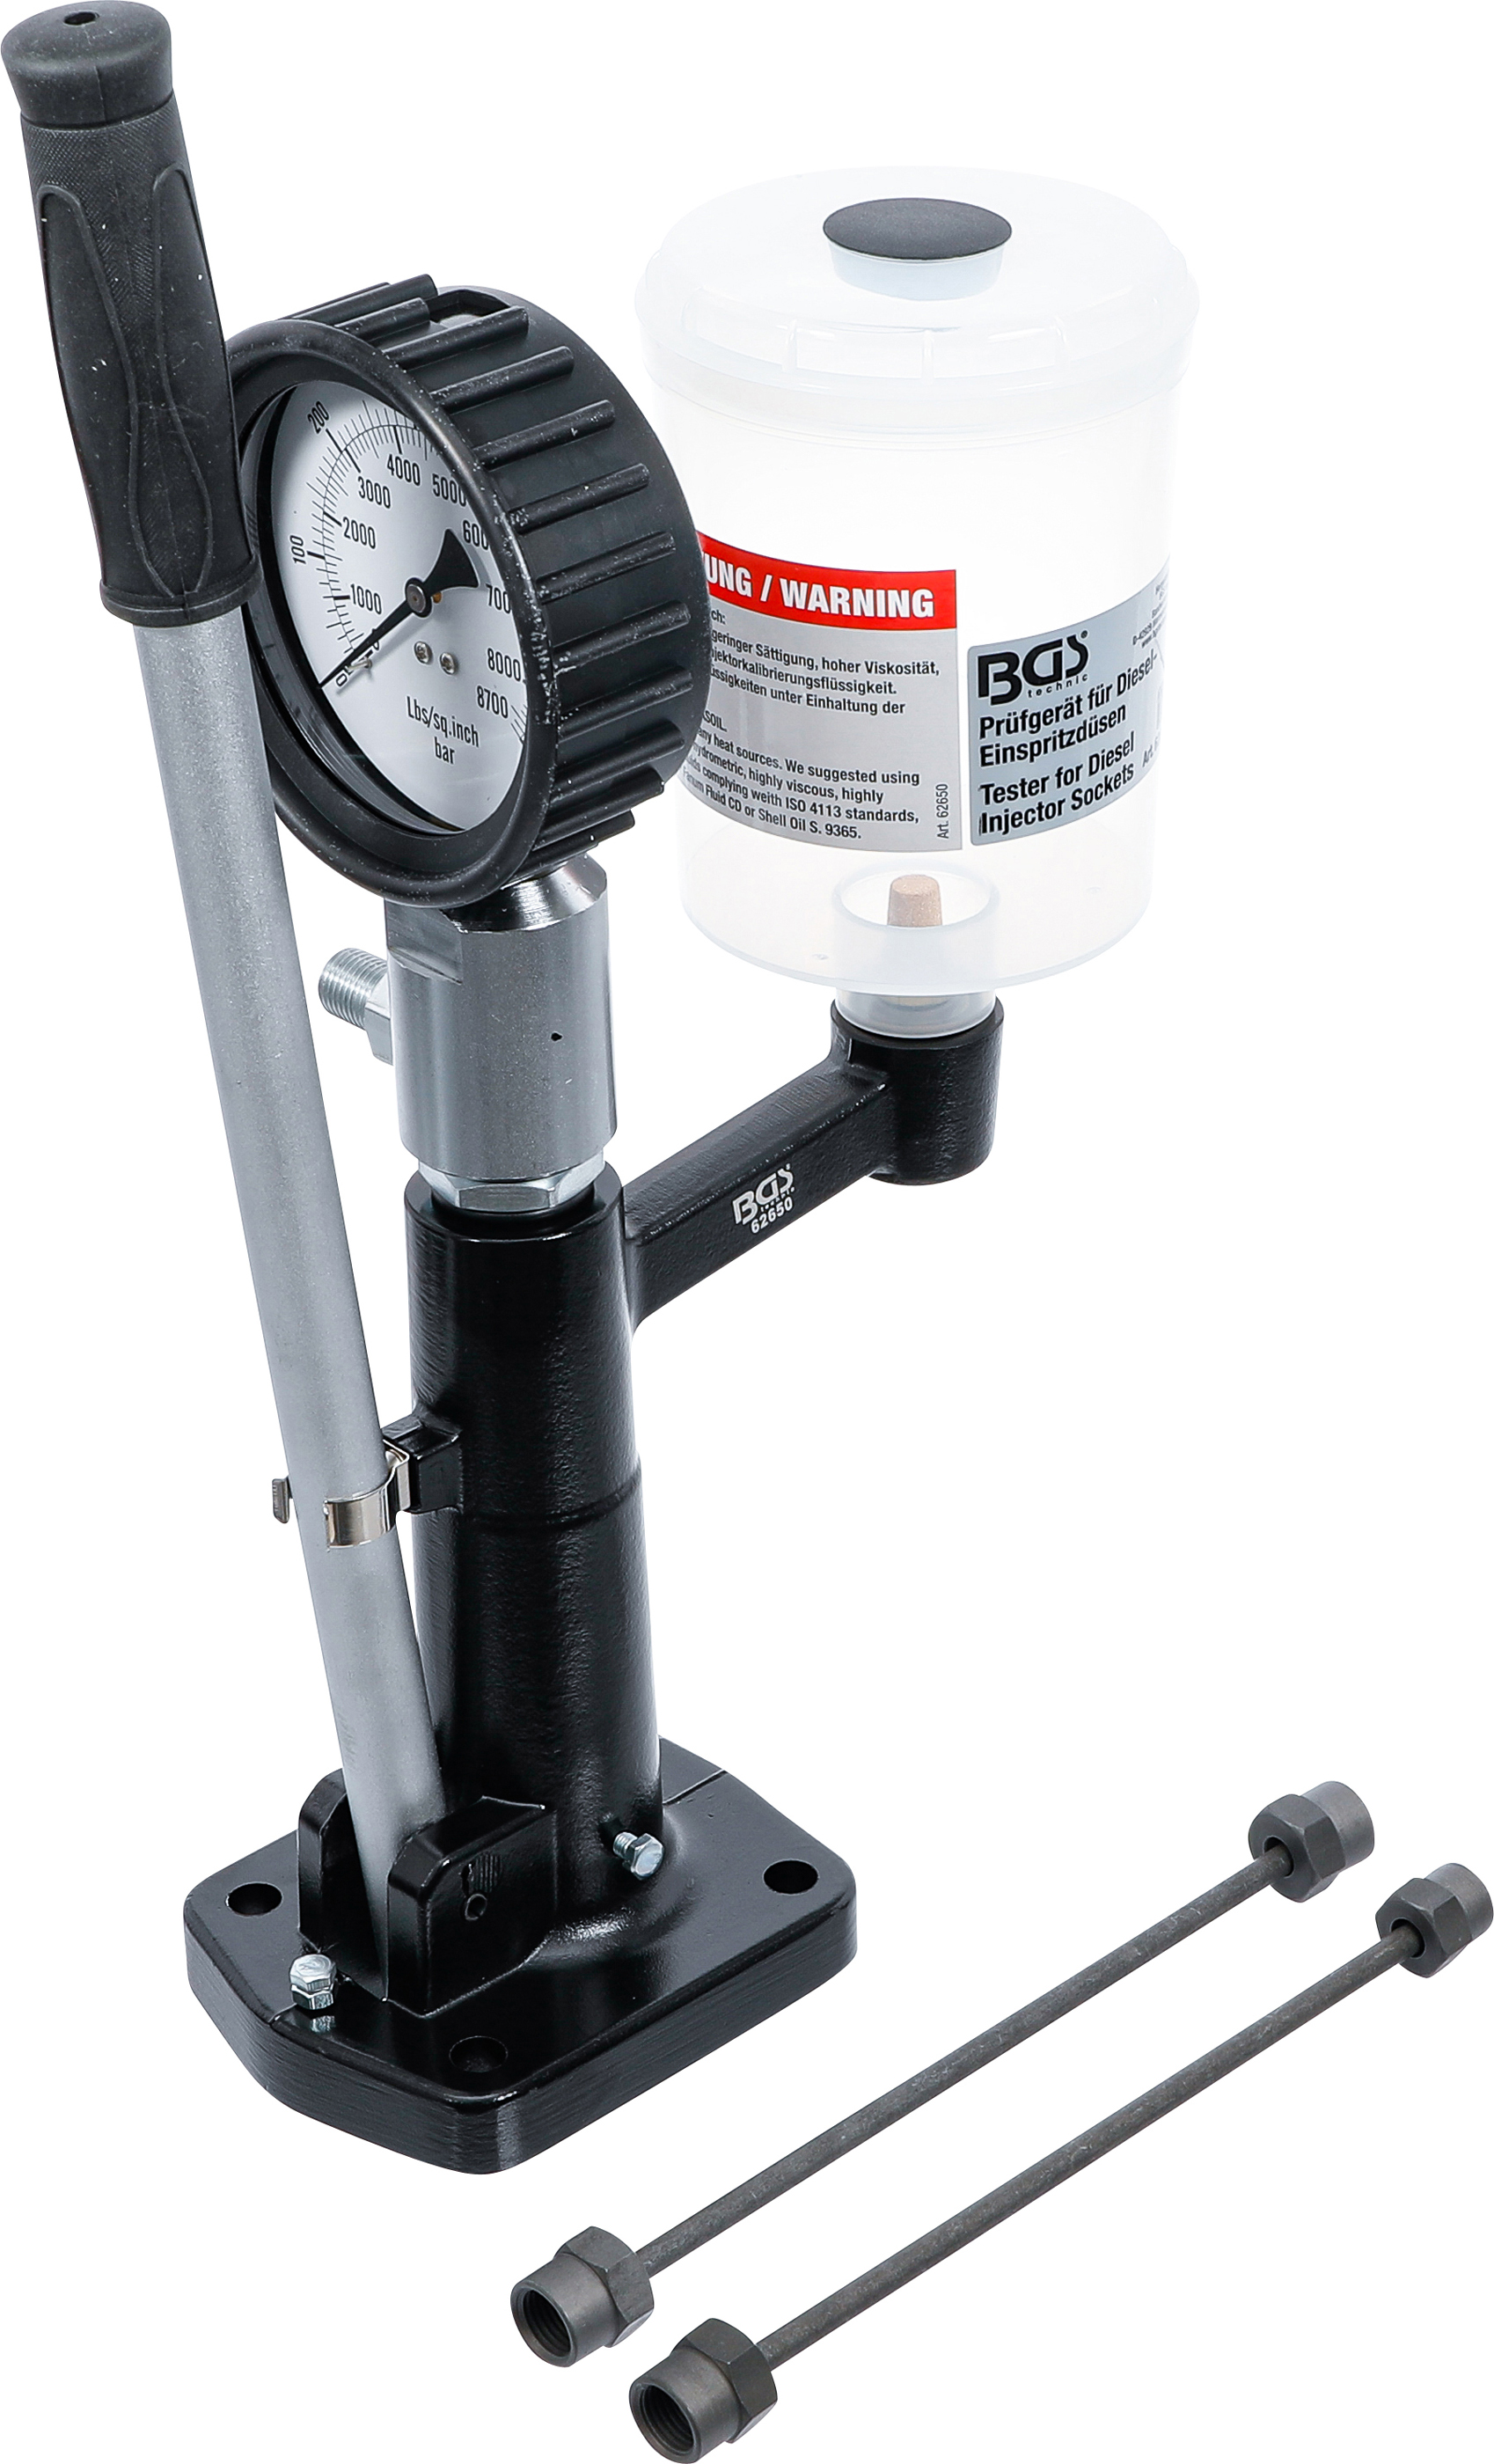 BGS 62650 Tester pentru reglarea presiunii de injectie, verificarea presiunii de deschidere a duzelor, pulverizare, control acustic